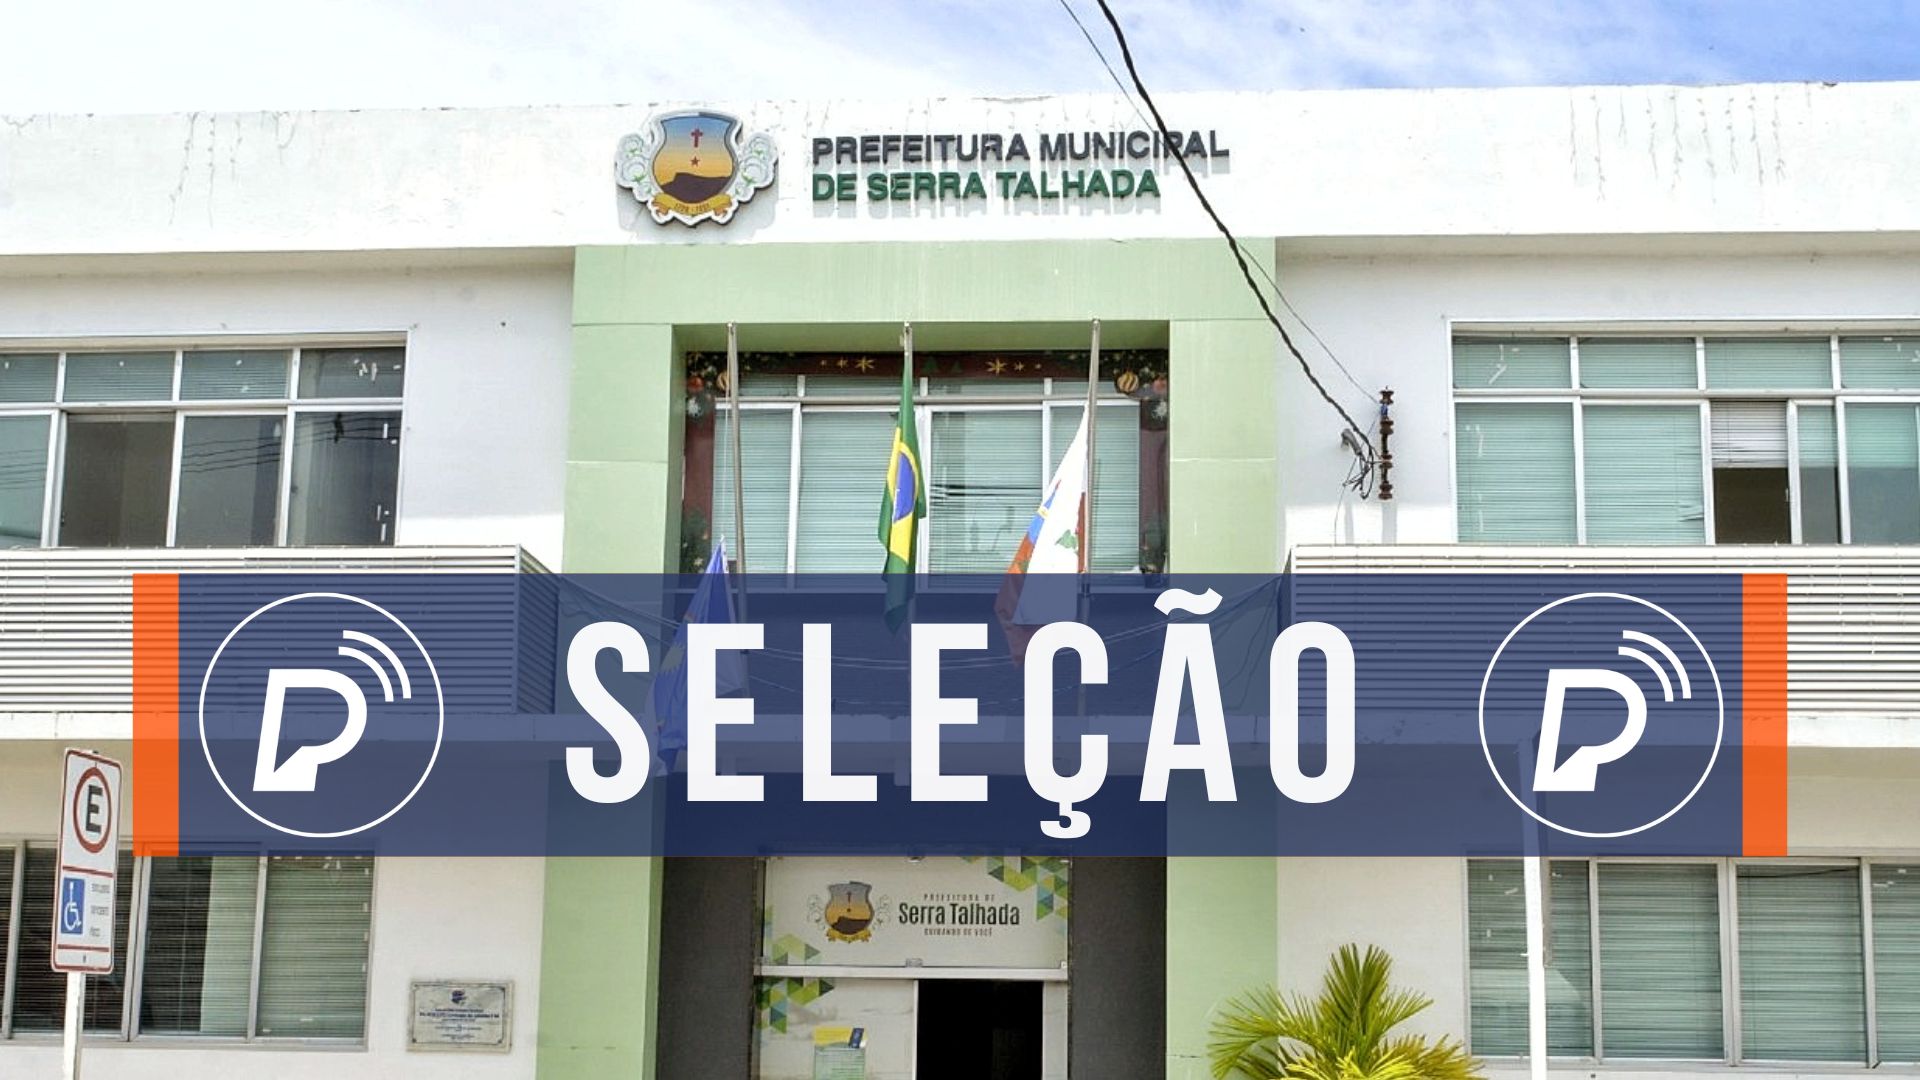 Processo seletivo da Prefeitura de Serra Talhada. Foto: Divulgação